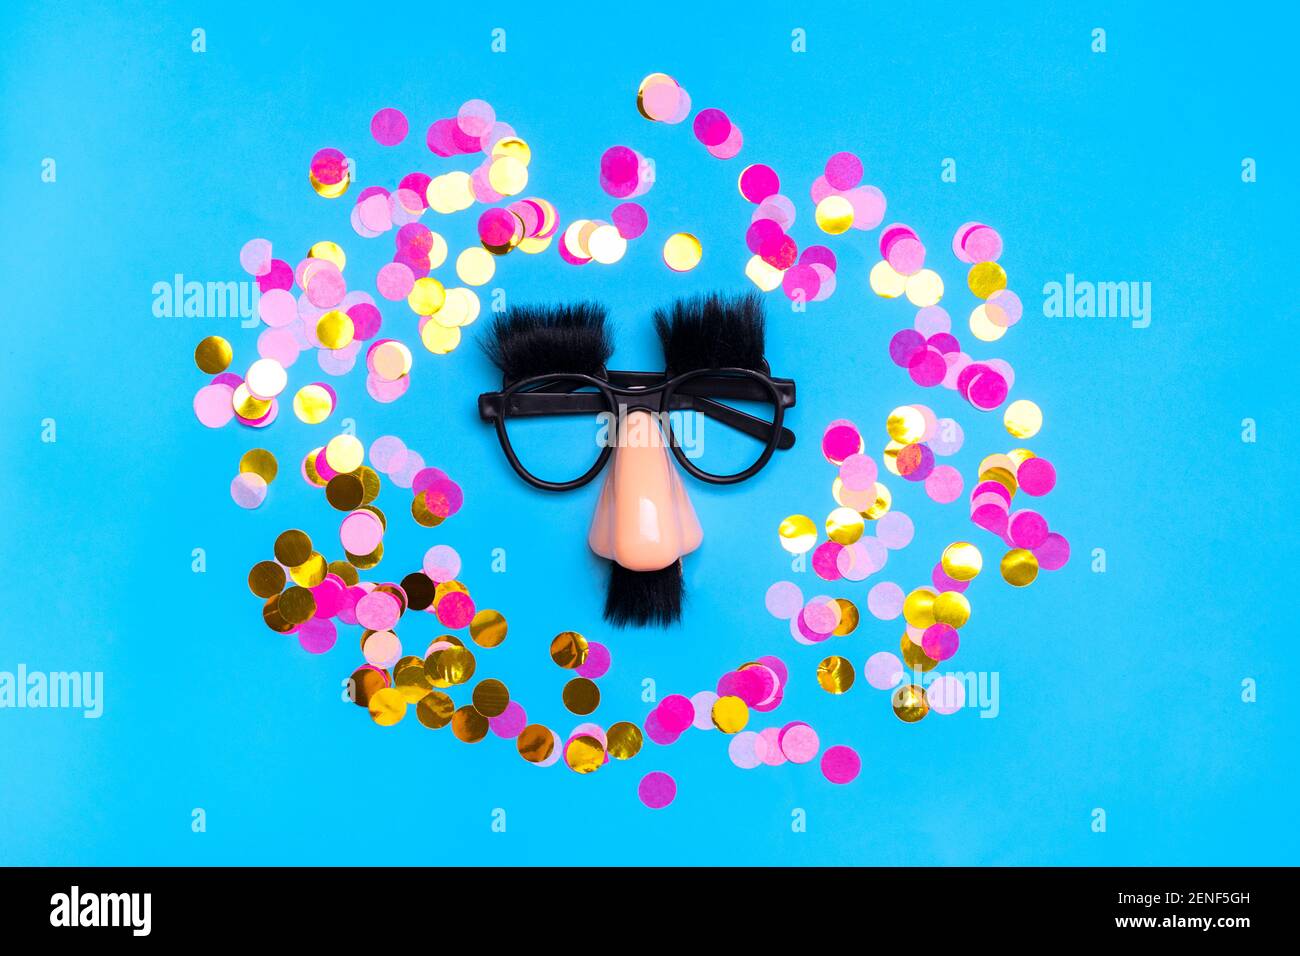 Faccia divertente - occhiali falsi, naso e baffi, confetti, paillettes su sfondo blu Happy fools Day Concept 1st April party Holiday card Foto Stock